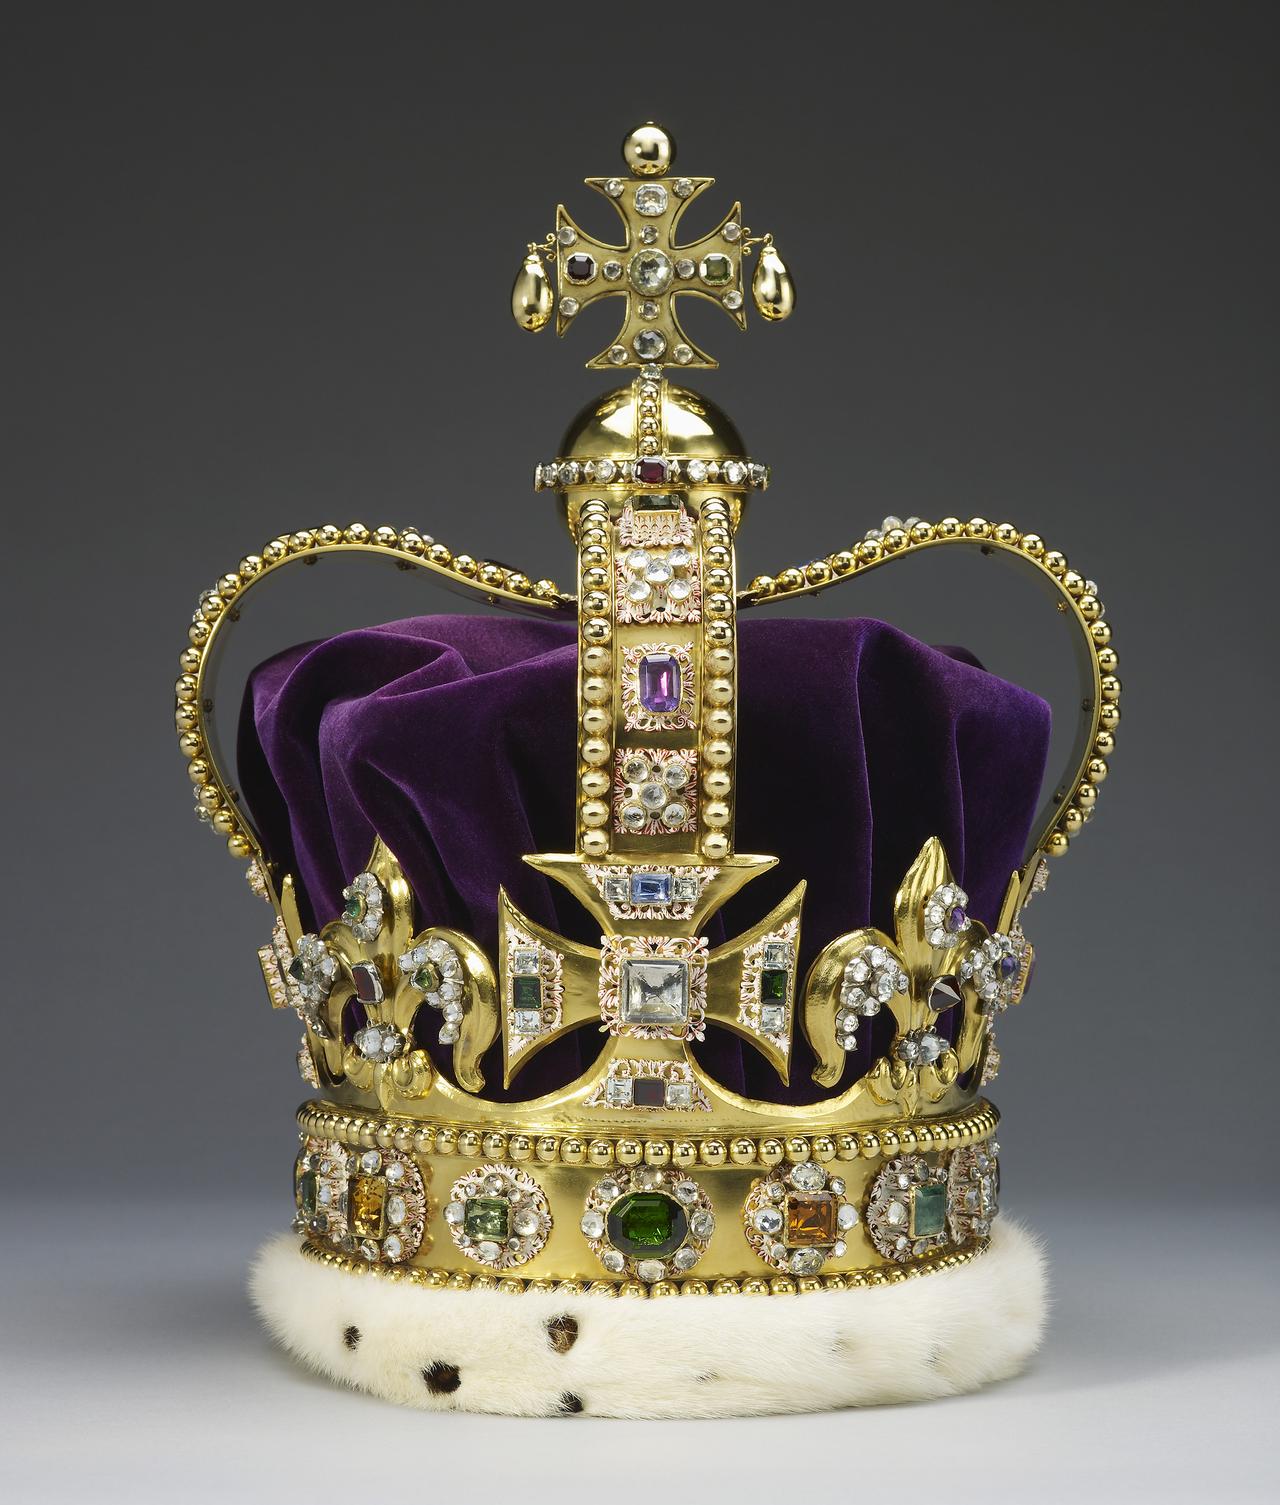 Edwardskrone der britischen Monarchie